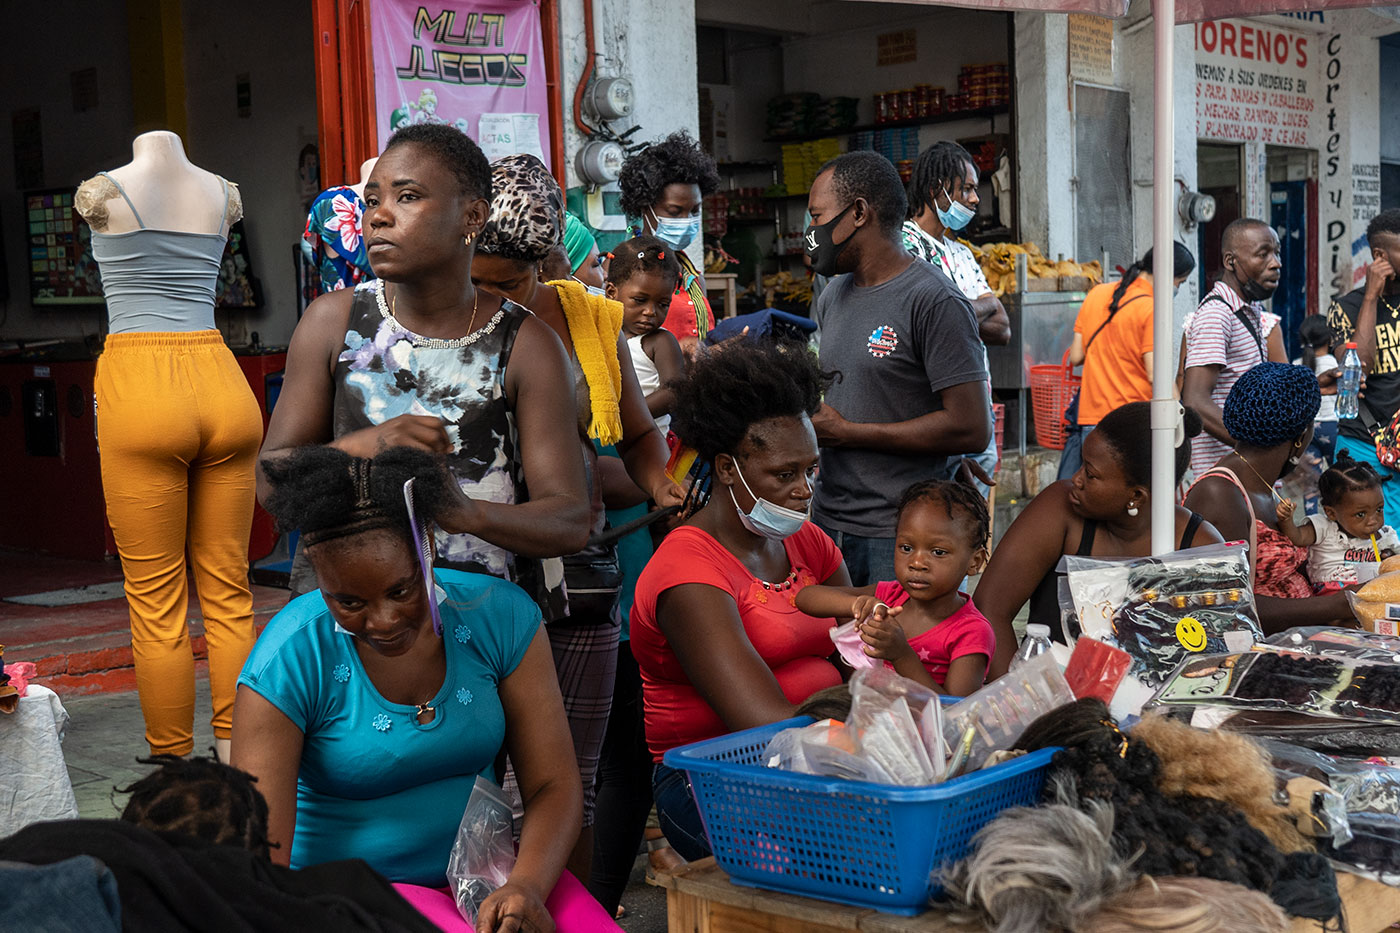 Domingo en Tapachula, Chiapas, el día de reunión y comercio para las personas afrodescendientes que permanecen desde hace meses en esta ciudad fronteriza.